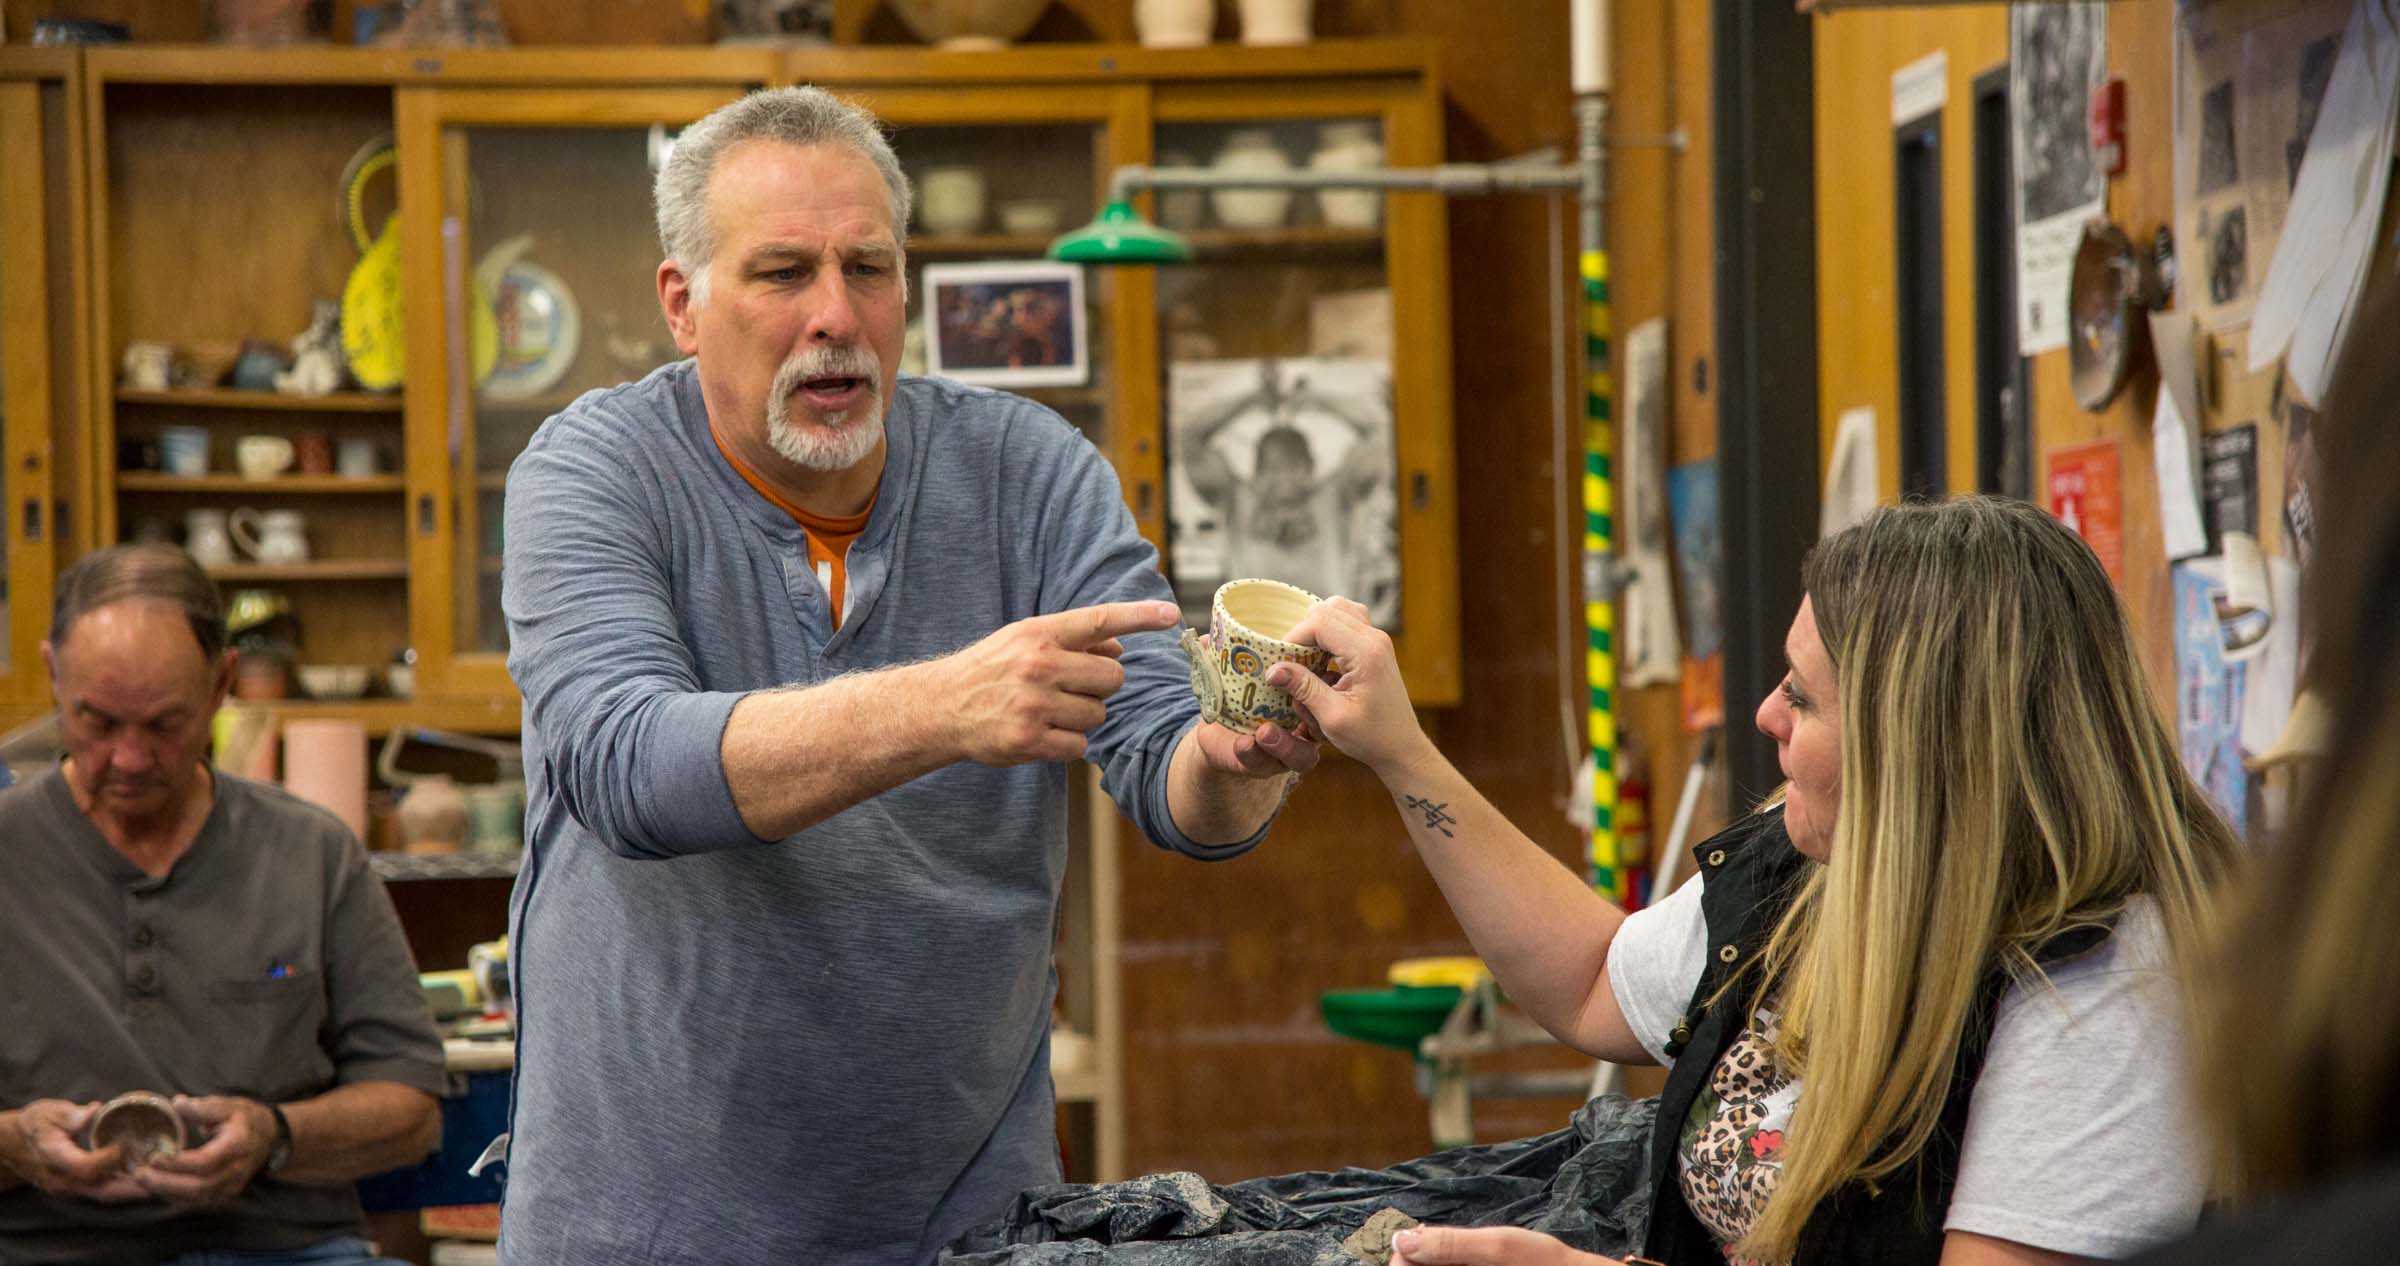 Associate Art Professor, Chris Stanley shows class a bowl